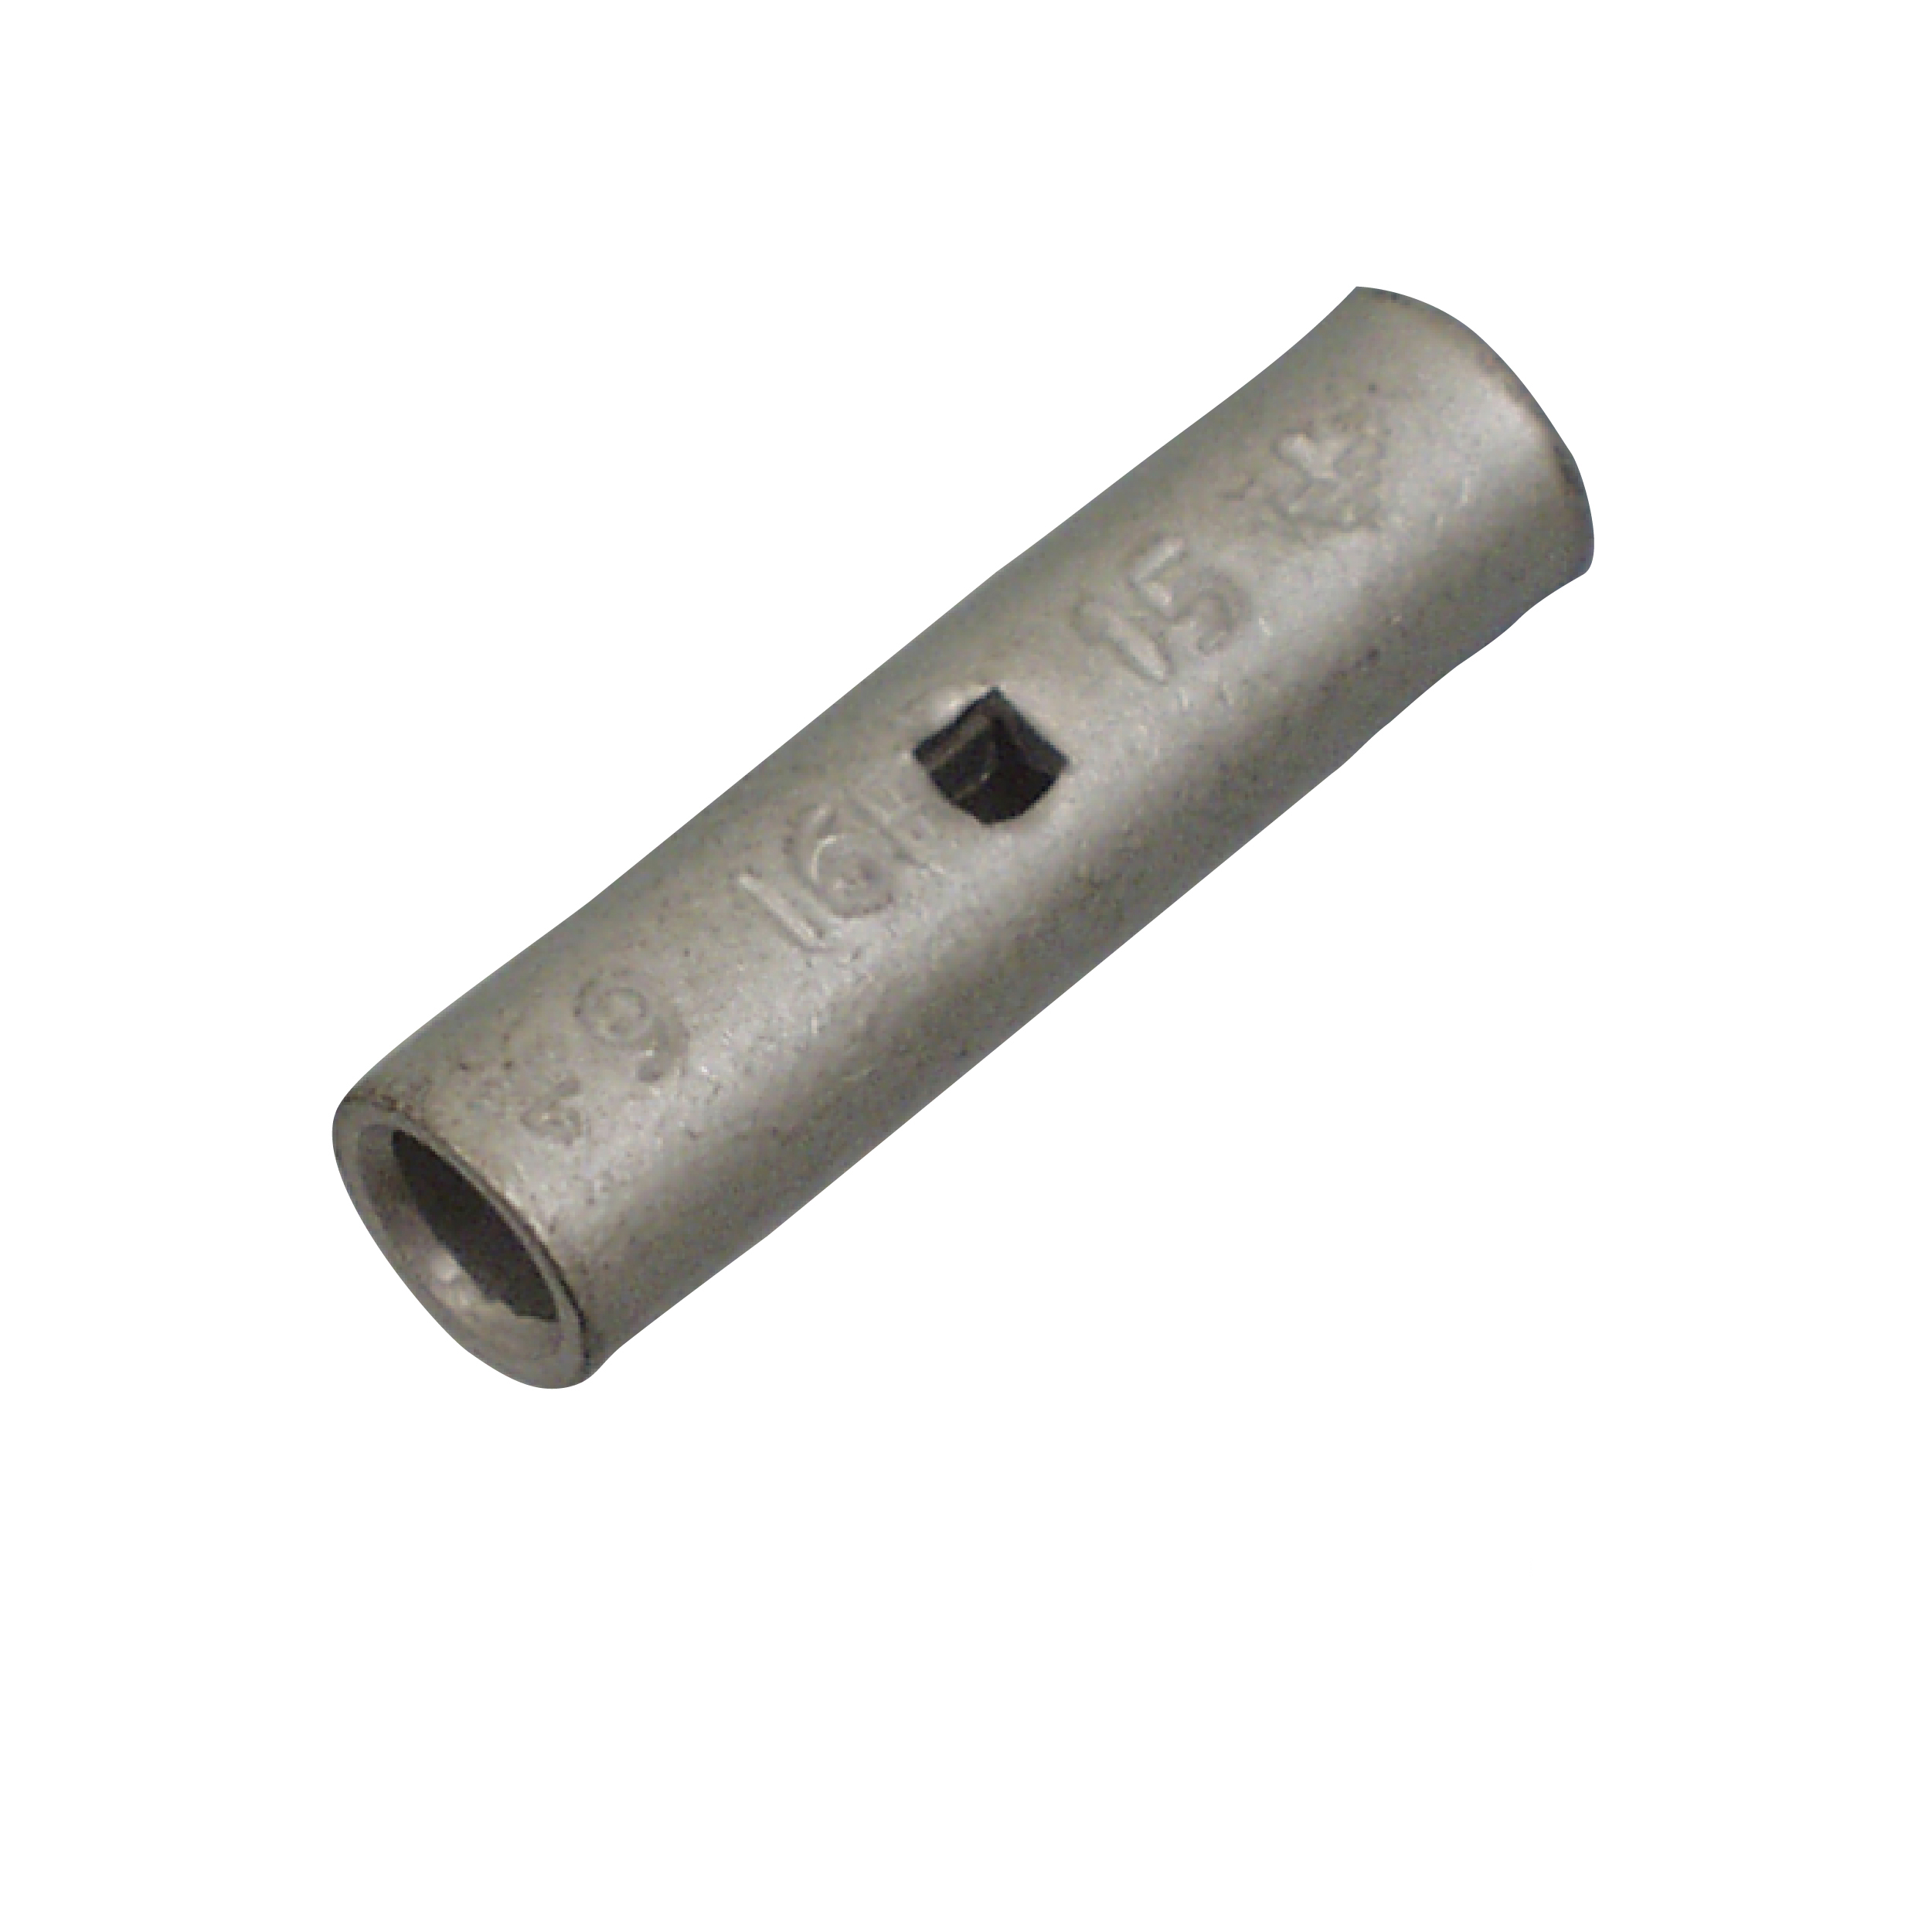 Elpress KST Copper Through Connectors - Splices (Range 10-800mm²) - KST25, KST35, KST50, KST95